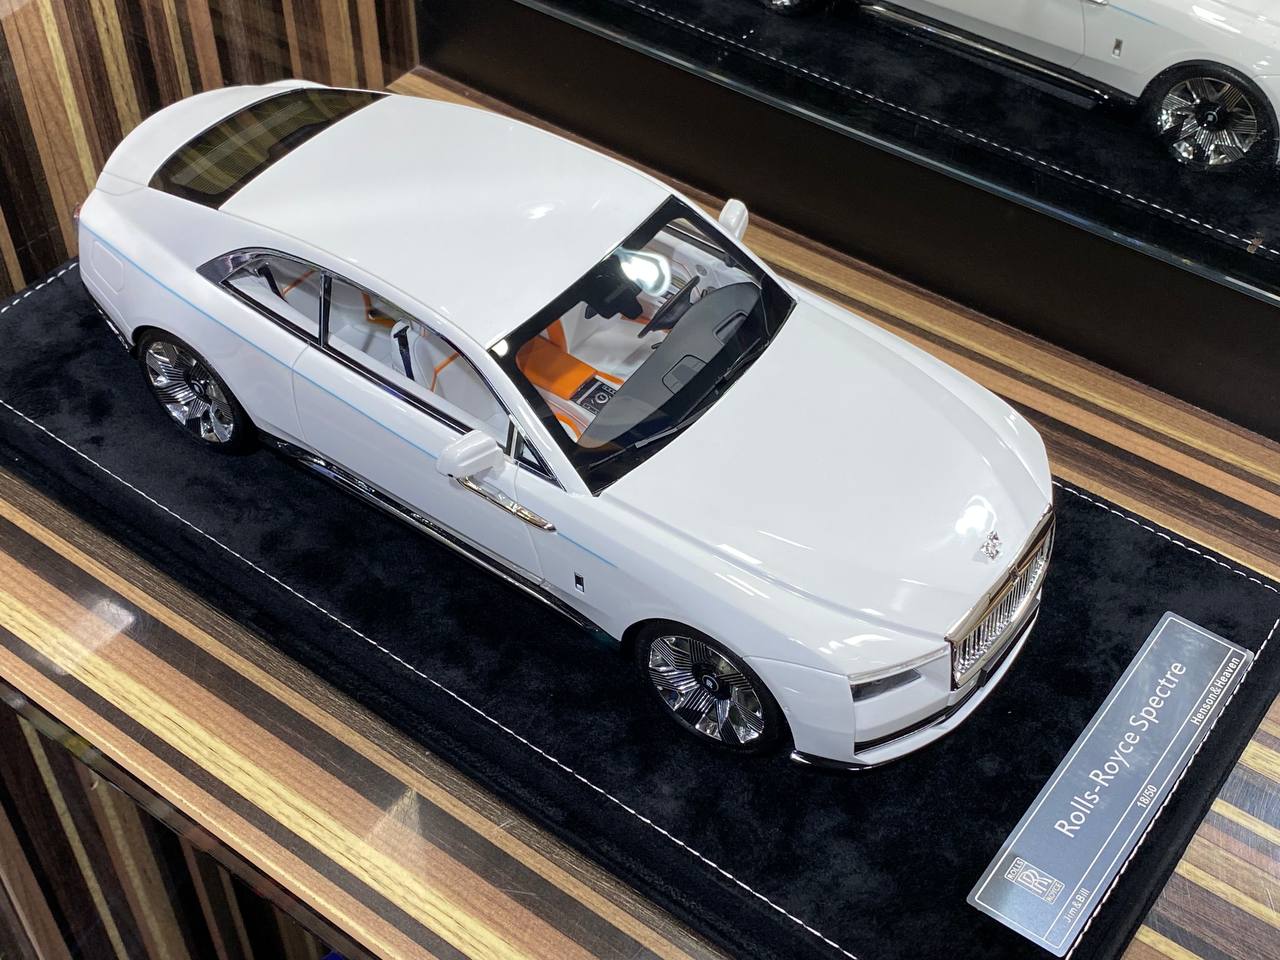 1/18 Rolls-Royce Spectre Pearl White Rolls-Royce Motor Cars